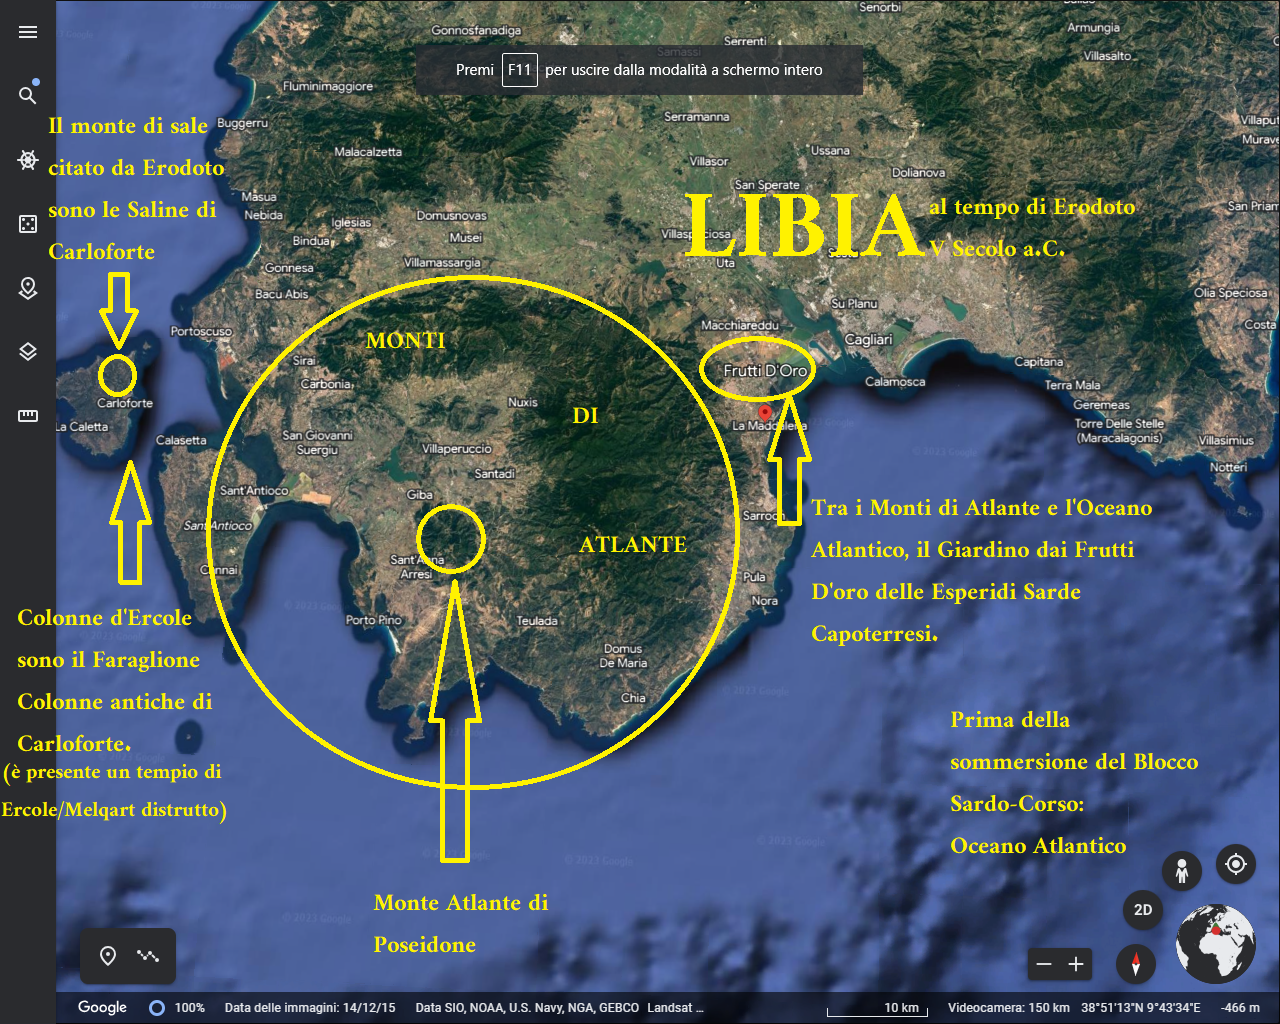 Bisher war die Kartographie des herodäischen Libyens falsch: Libyen ist die Provinz Cagliari